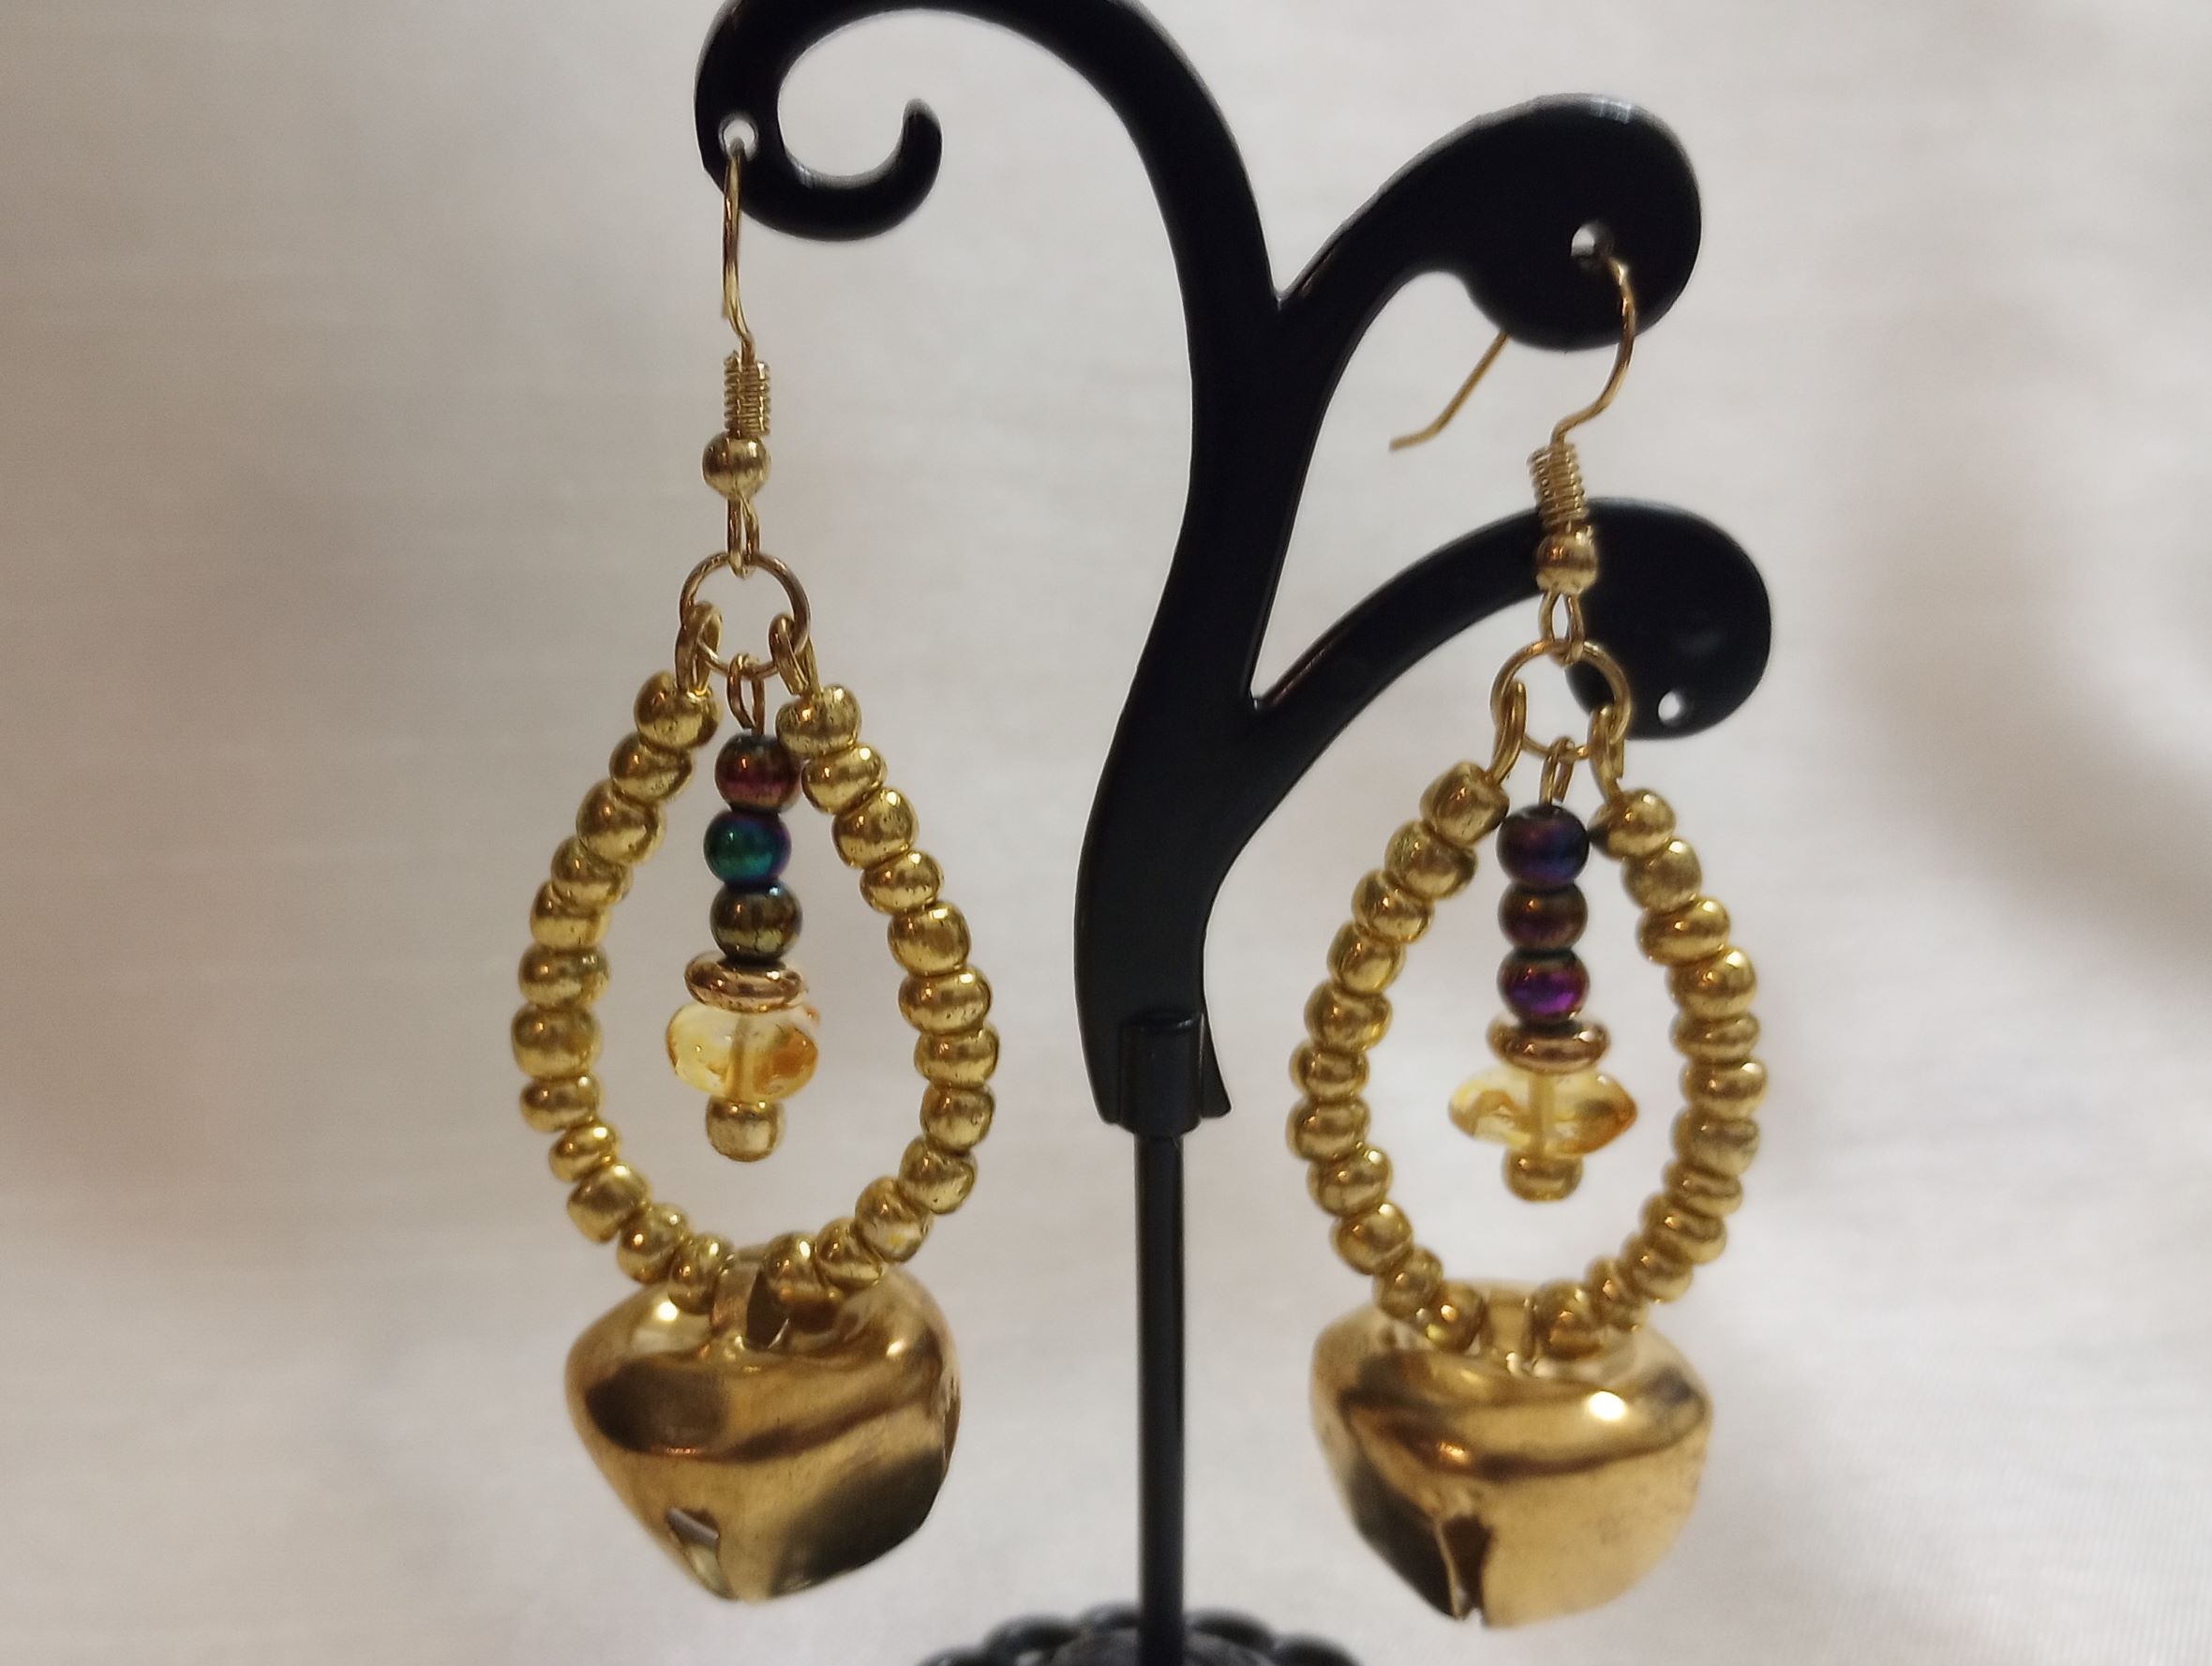 A – Gold Jingle Bell Earrings